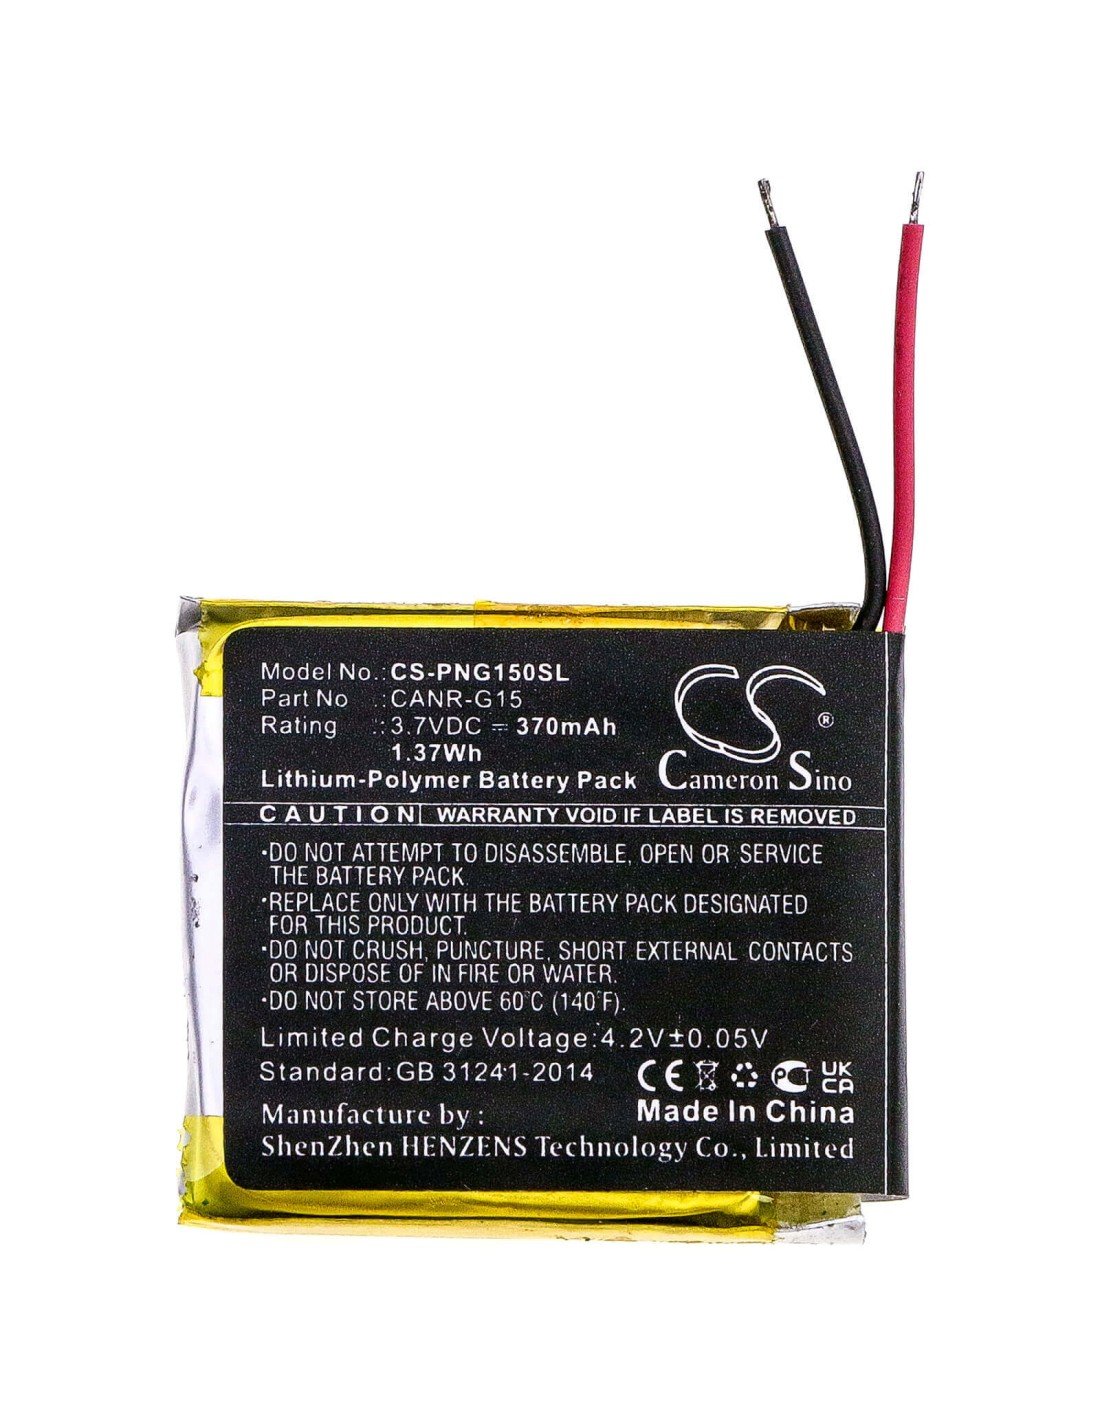 Battery for Plutour, Canr-g15, Lifecam, Onreal 3.7V, 370mAh - 1.37Wh